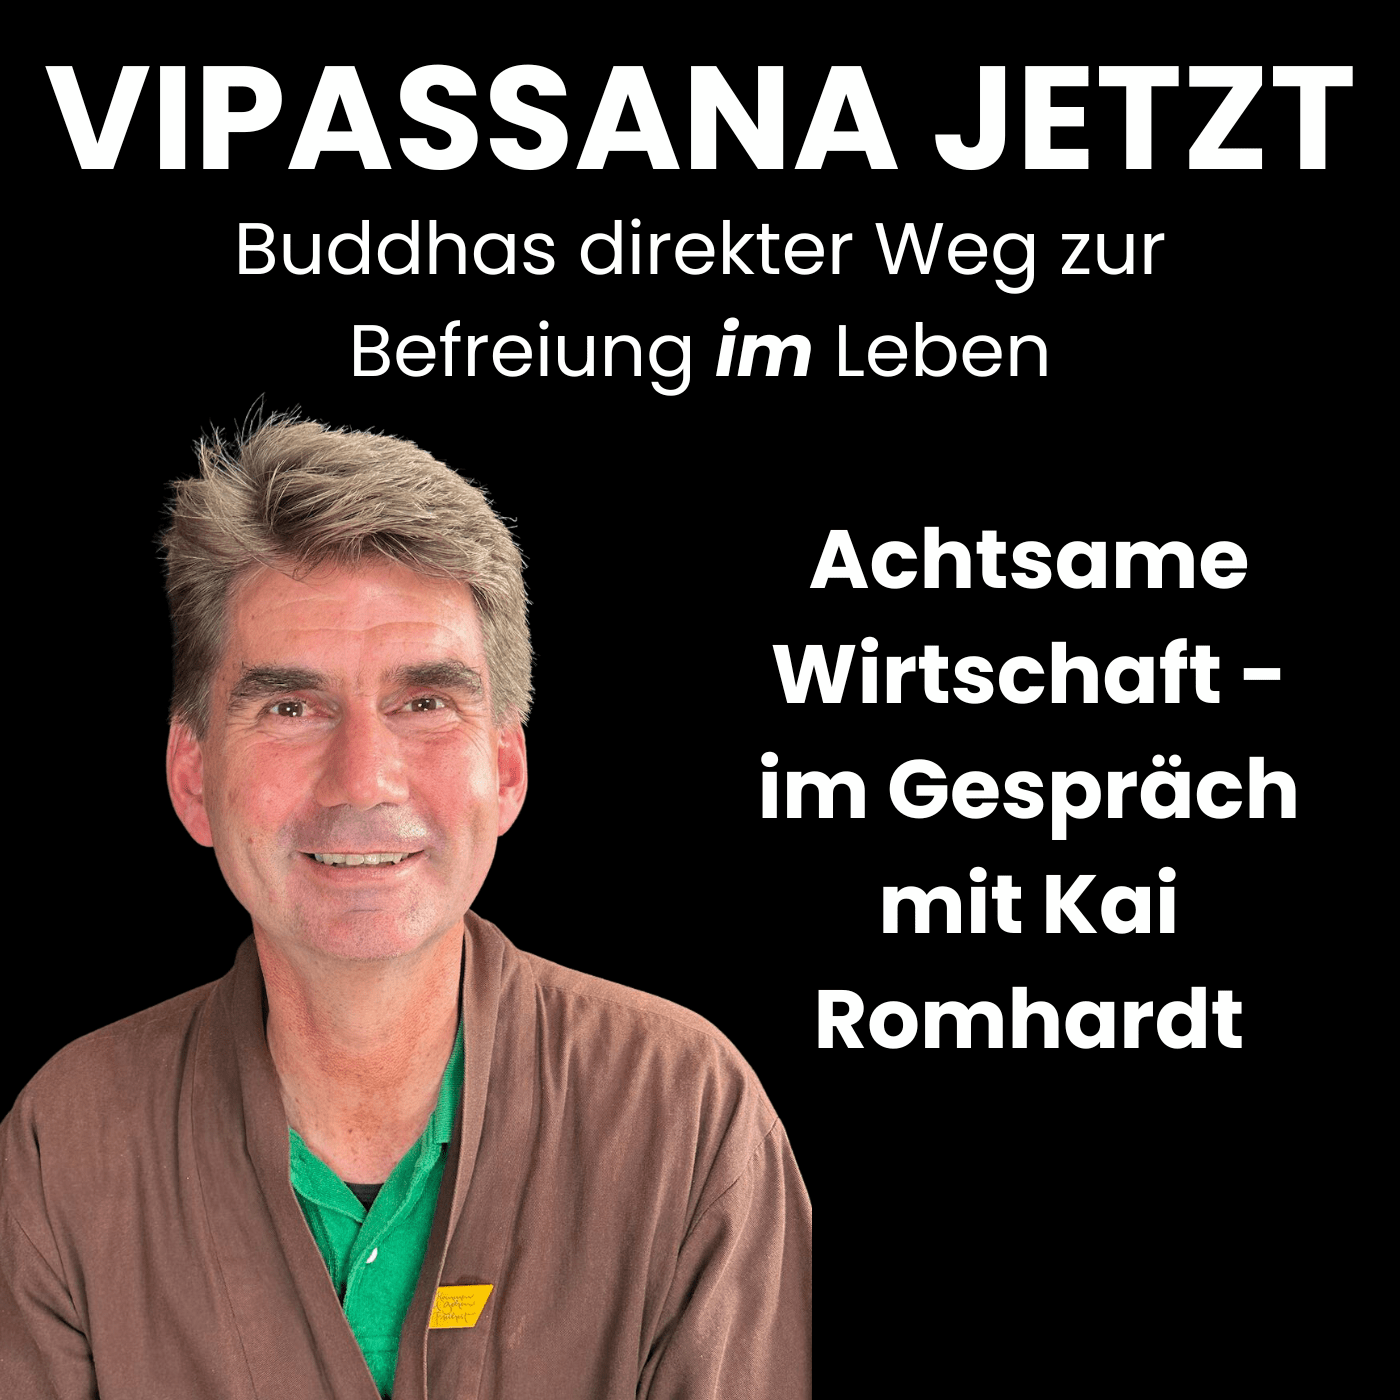 Vipassana Jetzt Podcast - Achtsame Wirtschaft - Im Gespräch mit Kai Romhardt